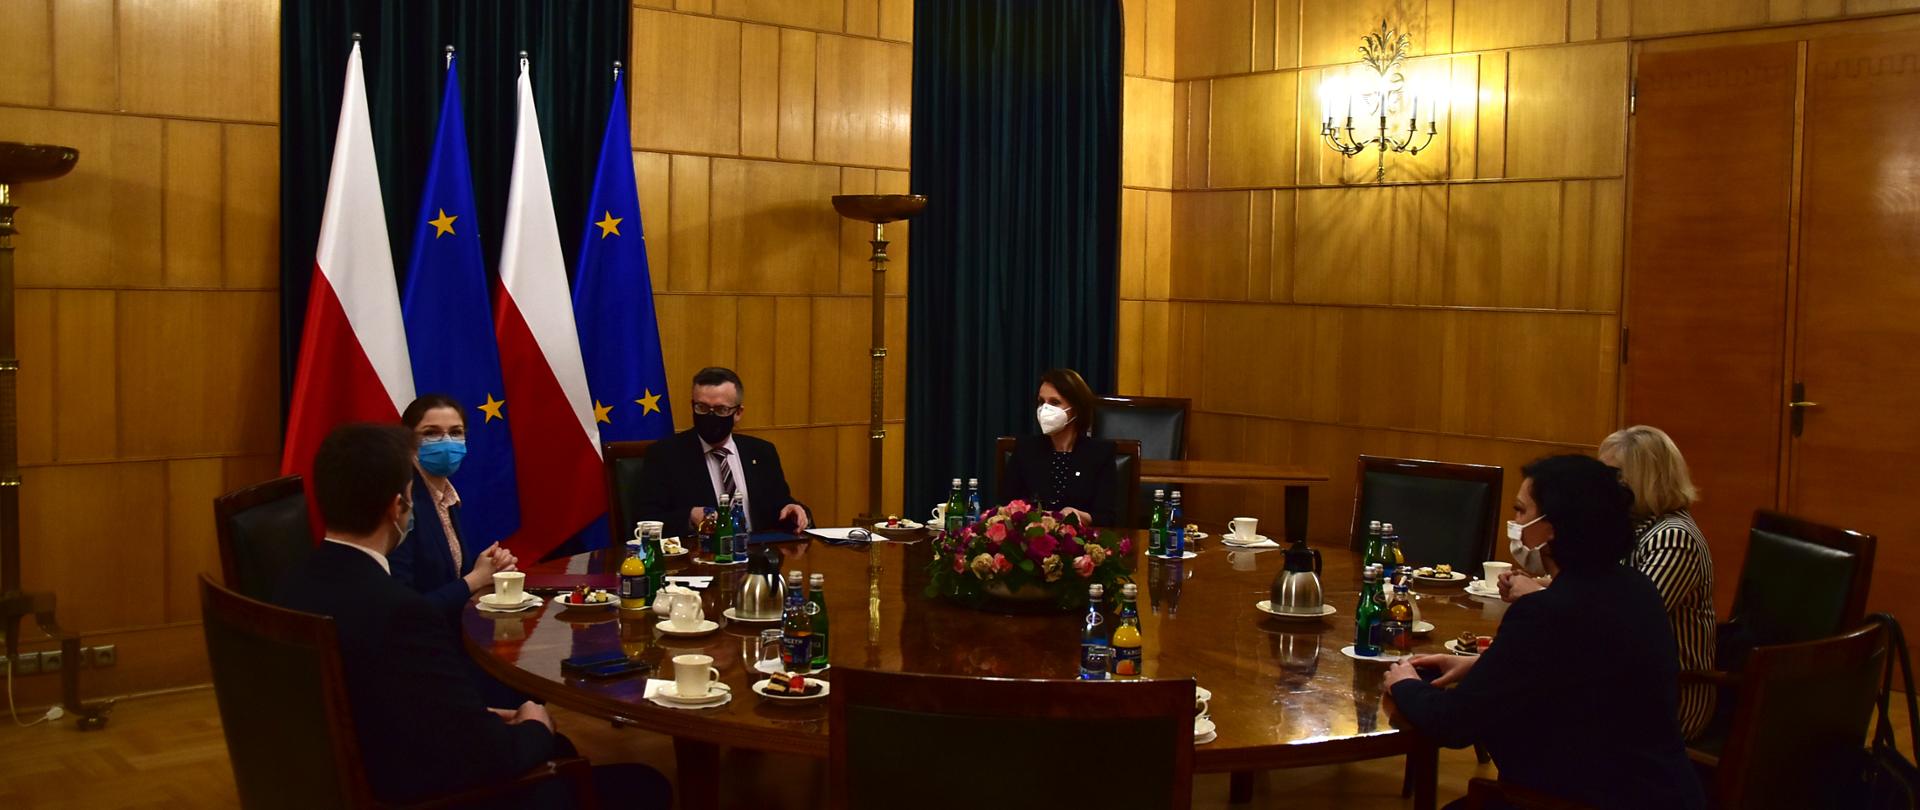 Uczestnicy spotkania siedzą przy okrągłym stole. Za Szefem Służby Cywilnej flagi: Polski i Unii Europejskiej